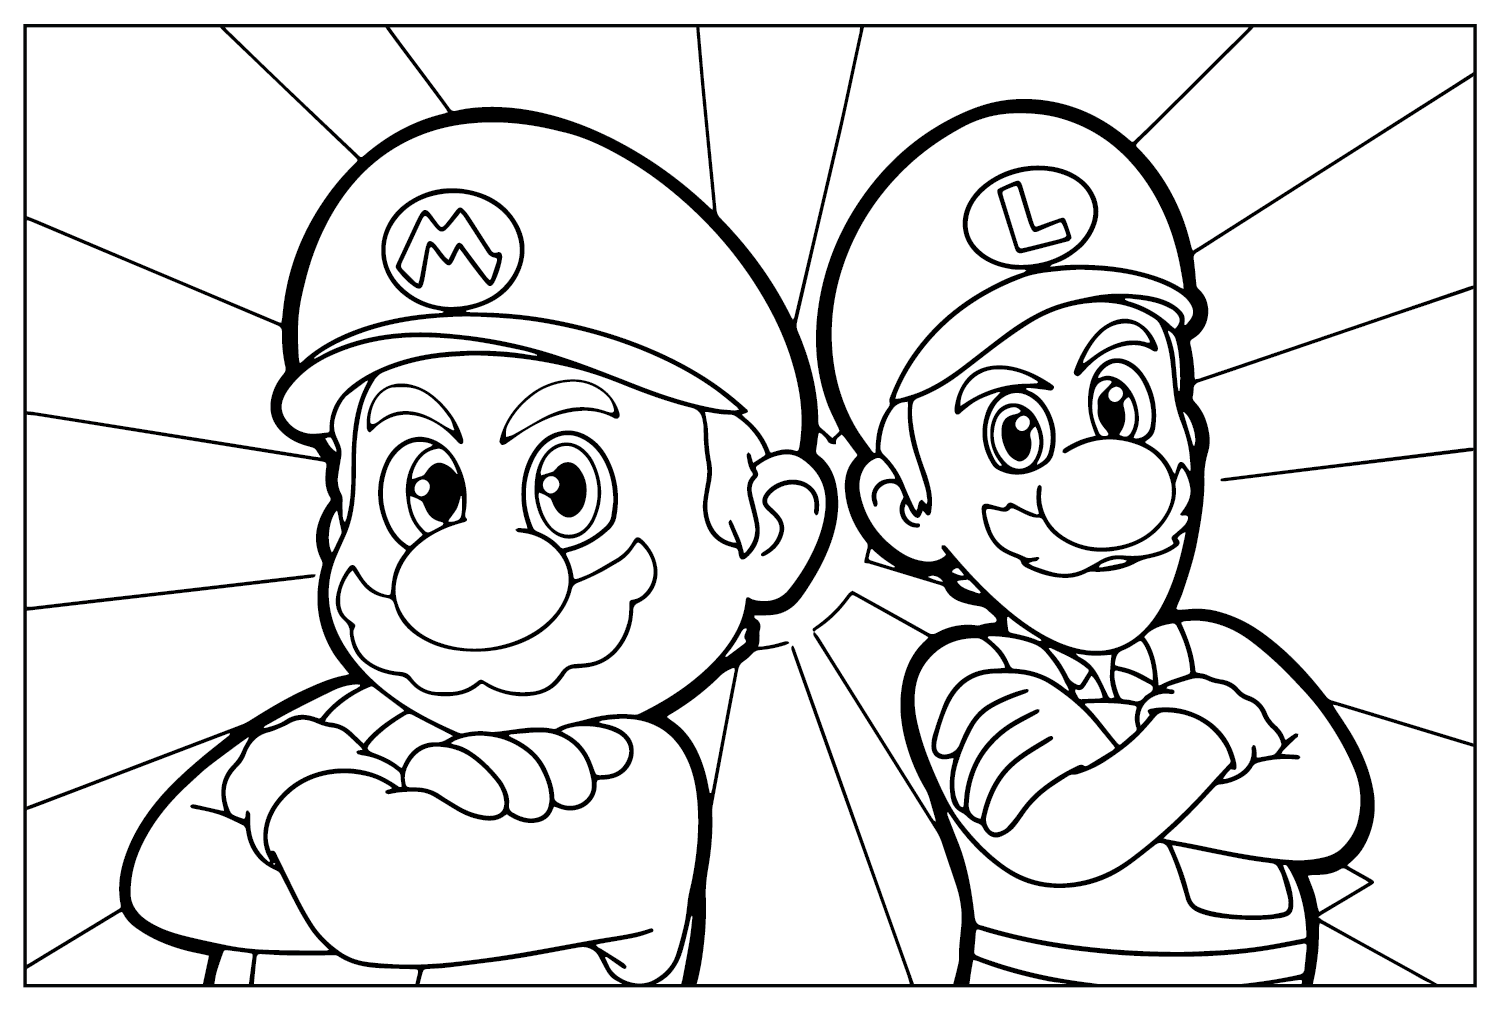 Mario e Luigi da colorare dal film Super Mario Bros.